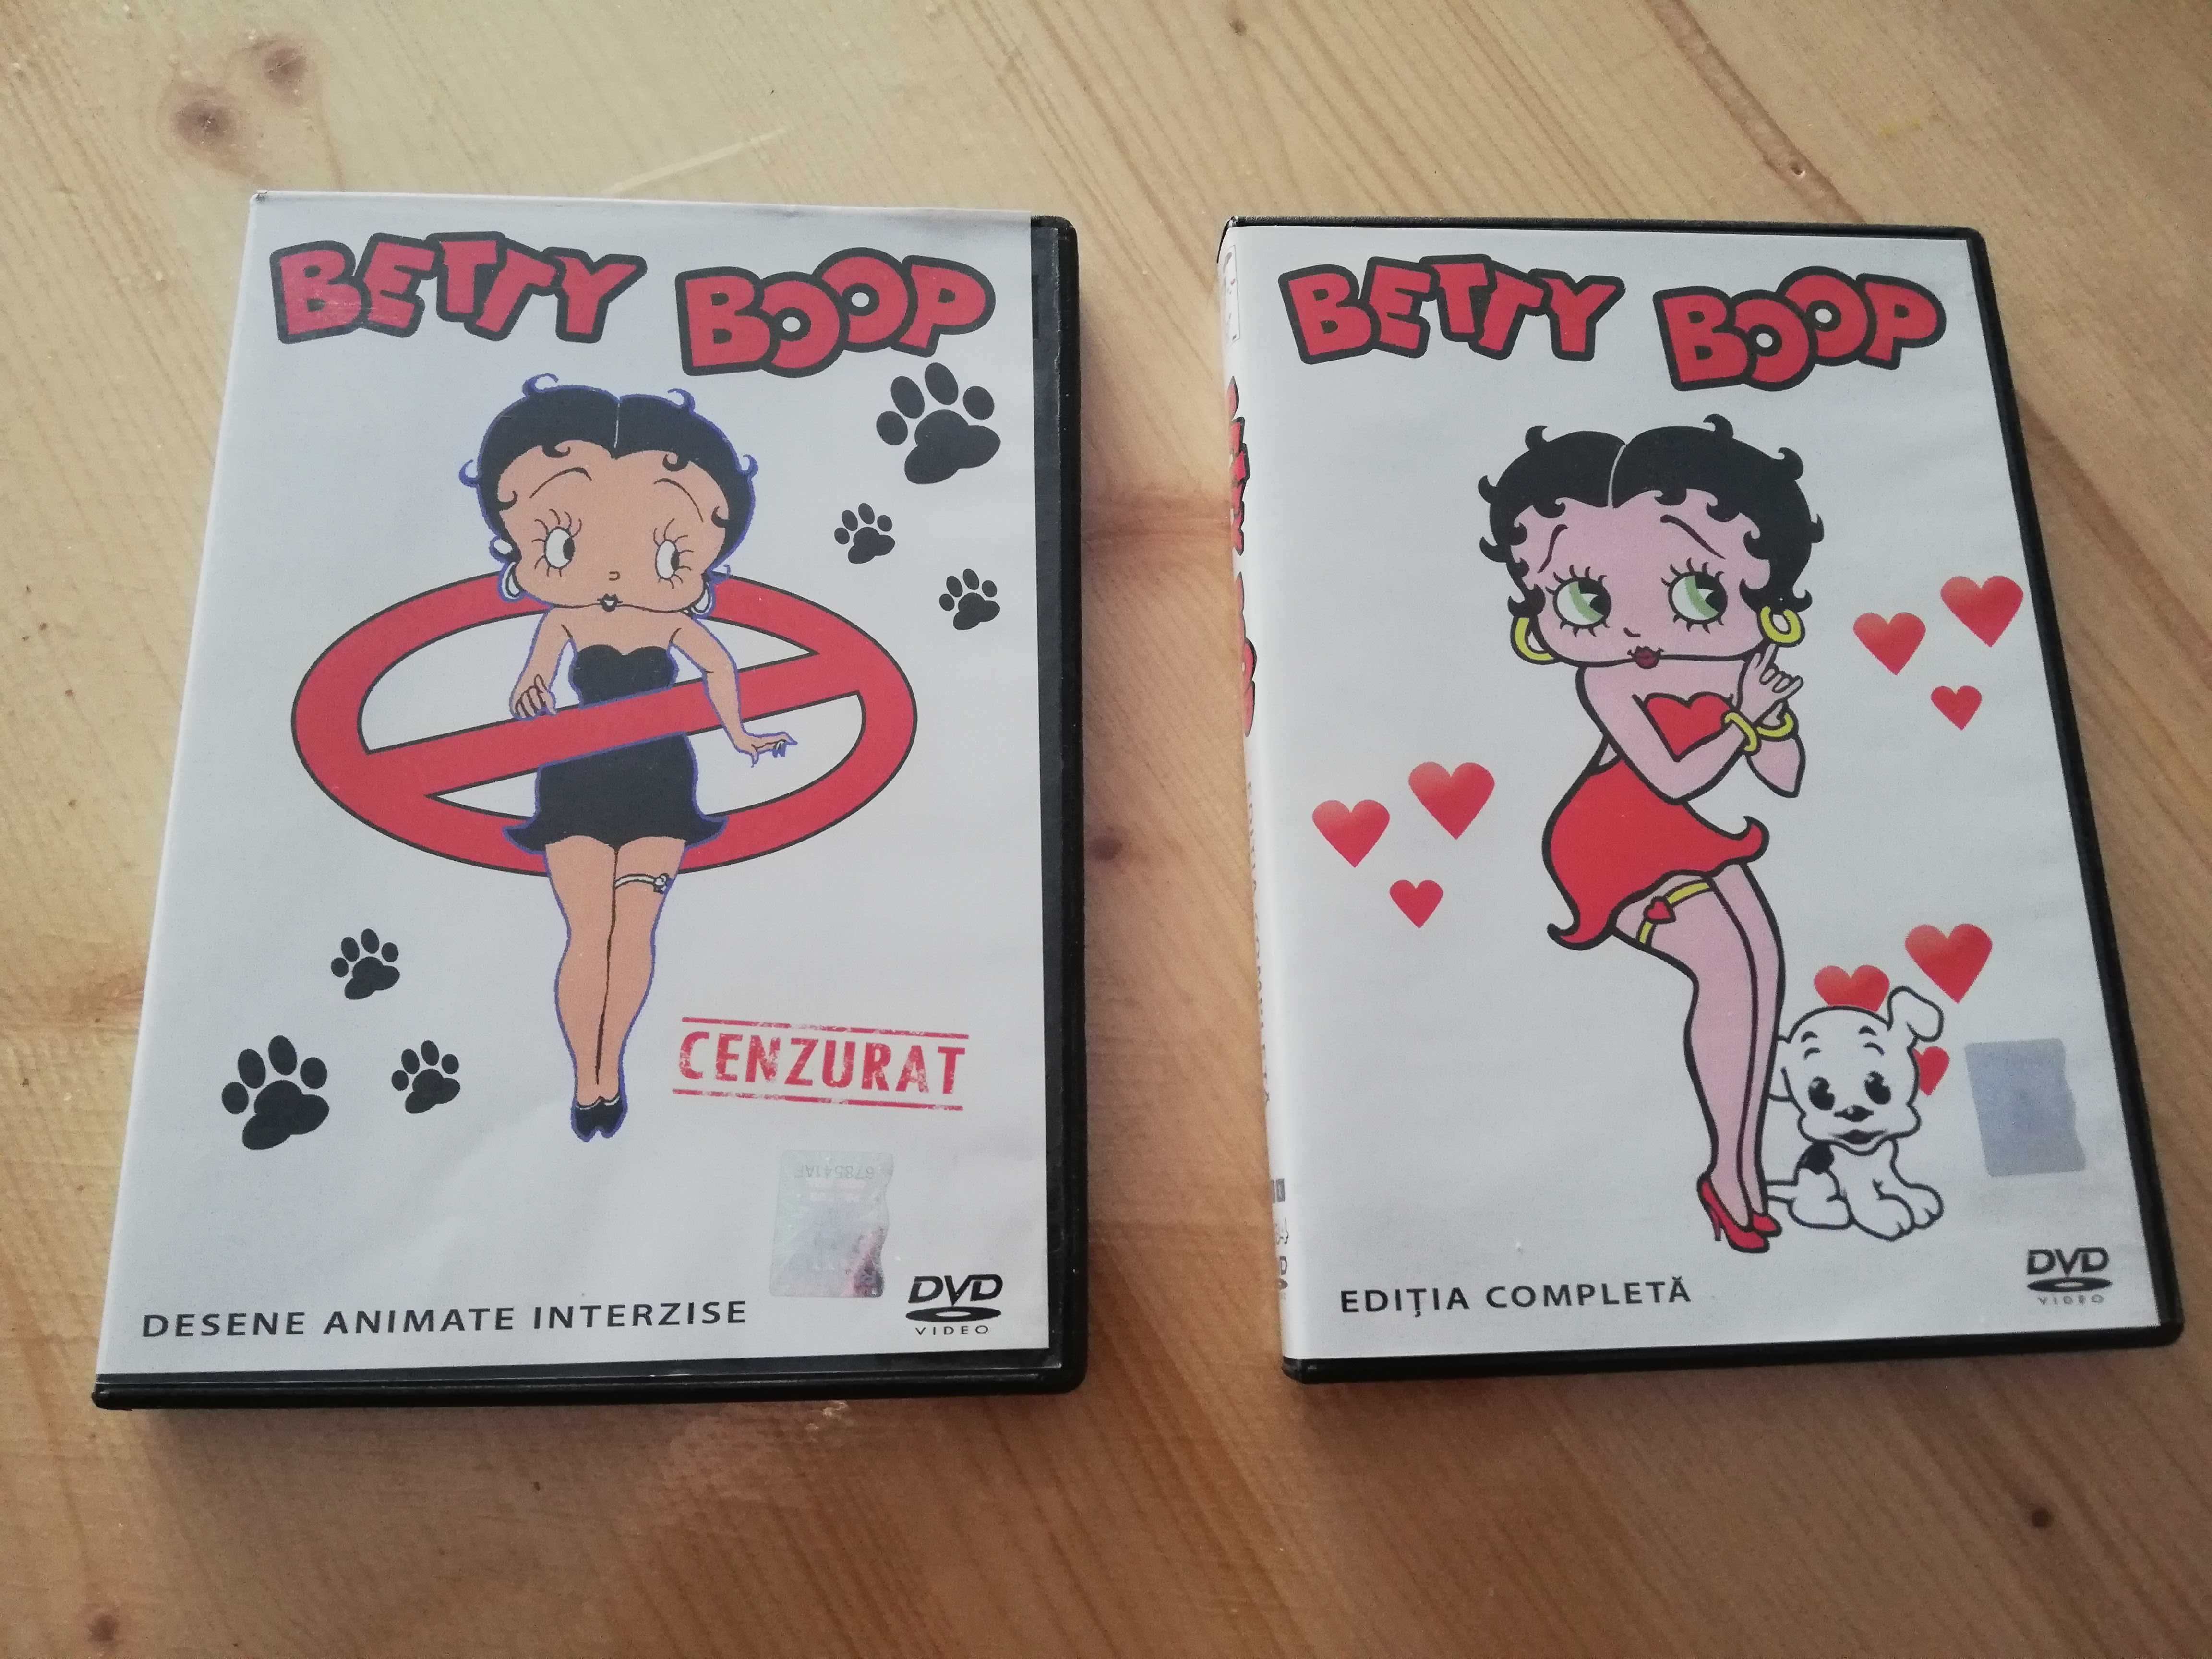 Desene animate Betty Boop - Ediția completa